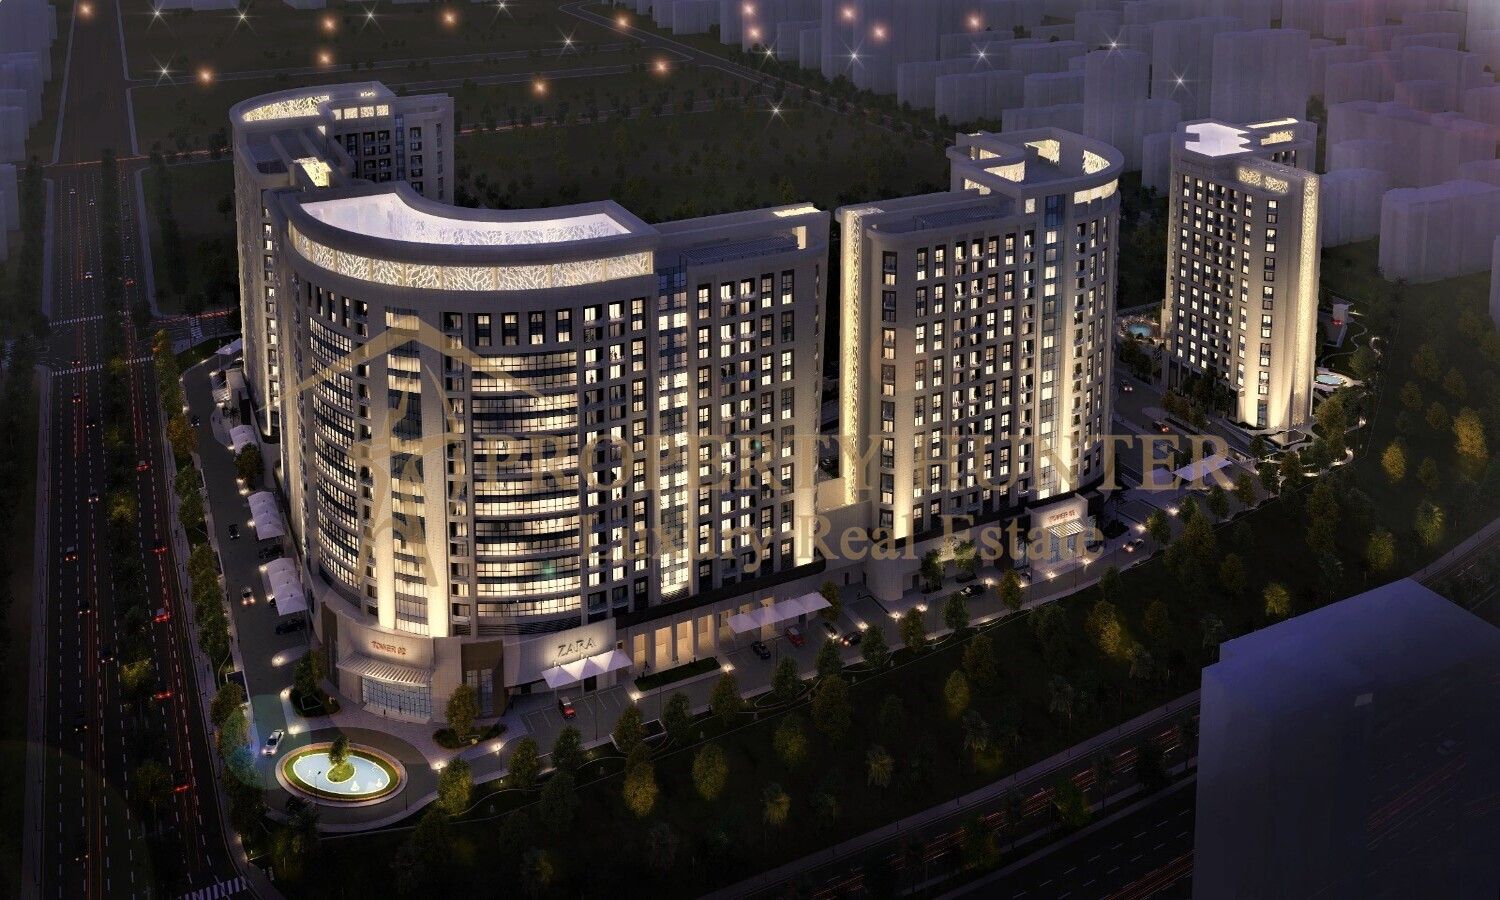 Riván | Comprar apartamentos en qatar | ciudad lusail | lusail qatar